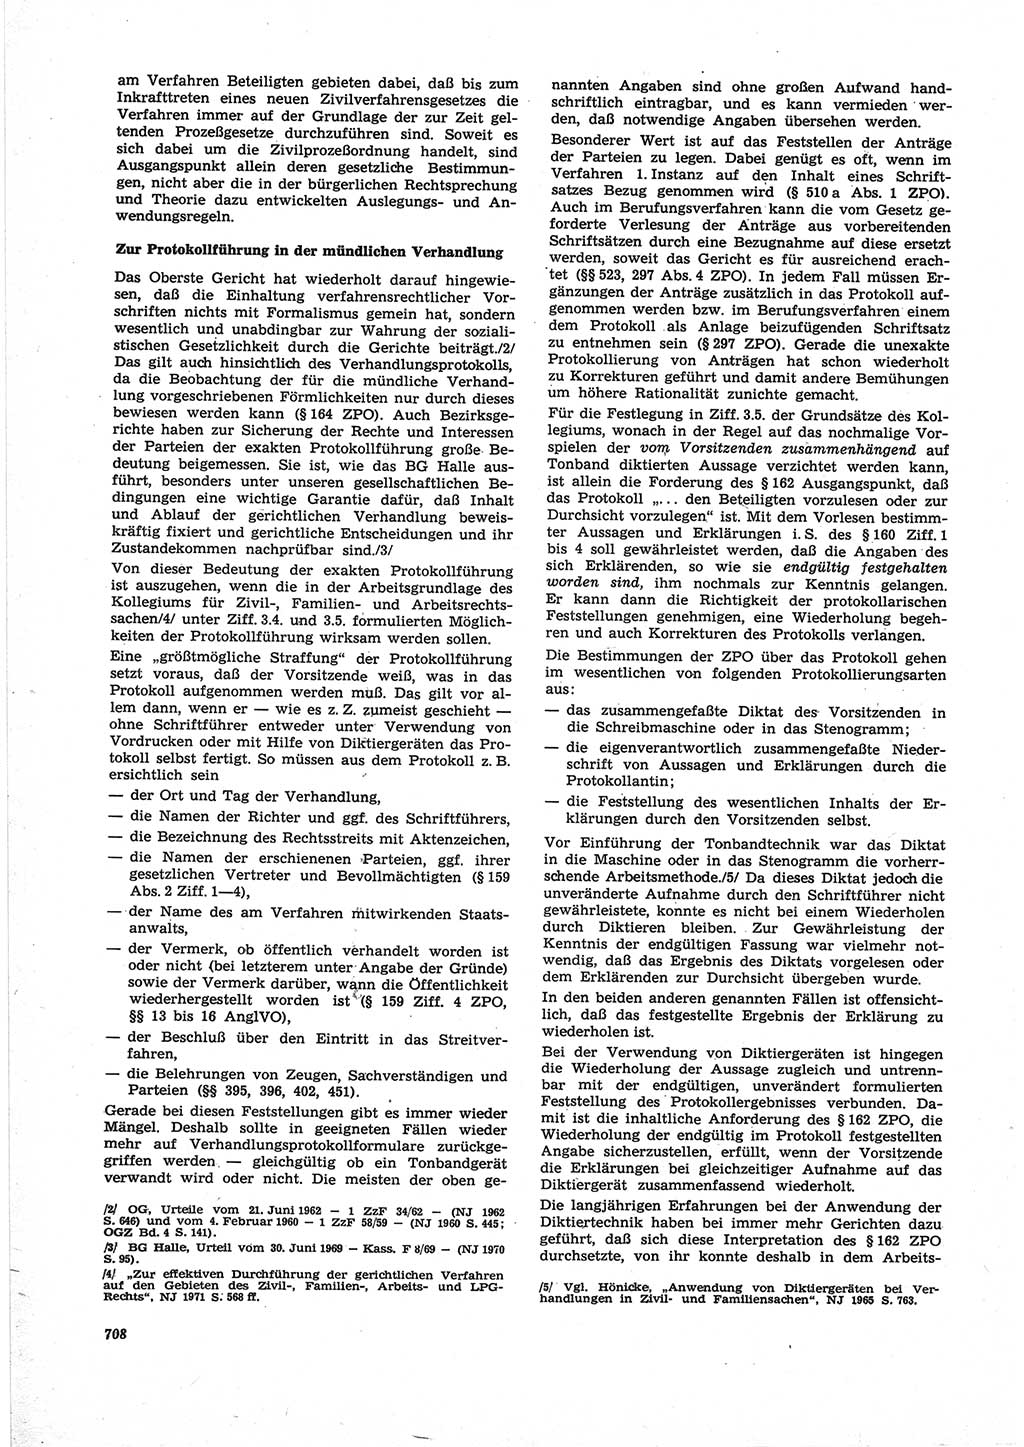 Neue Justiz (NJ), Zeitschrift für Recht und Rechtswissenschaft [Deutsche Demokratische Republik (DDR)], 25. Jahrgang 1971, Seite 708 (NJ DDR 1971, S. 708)